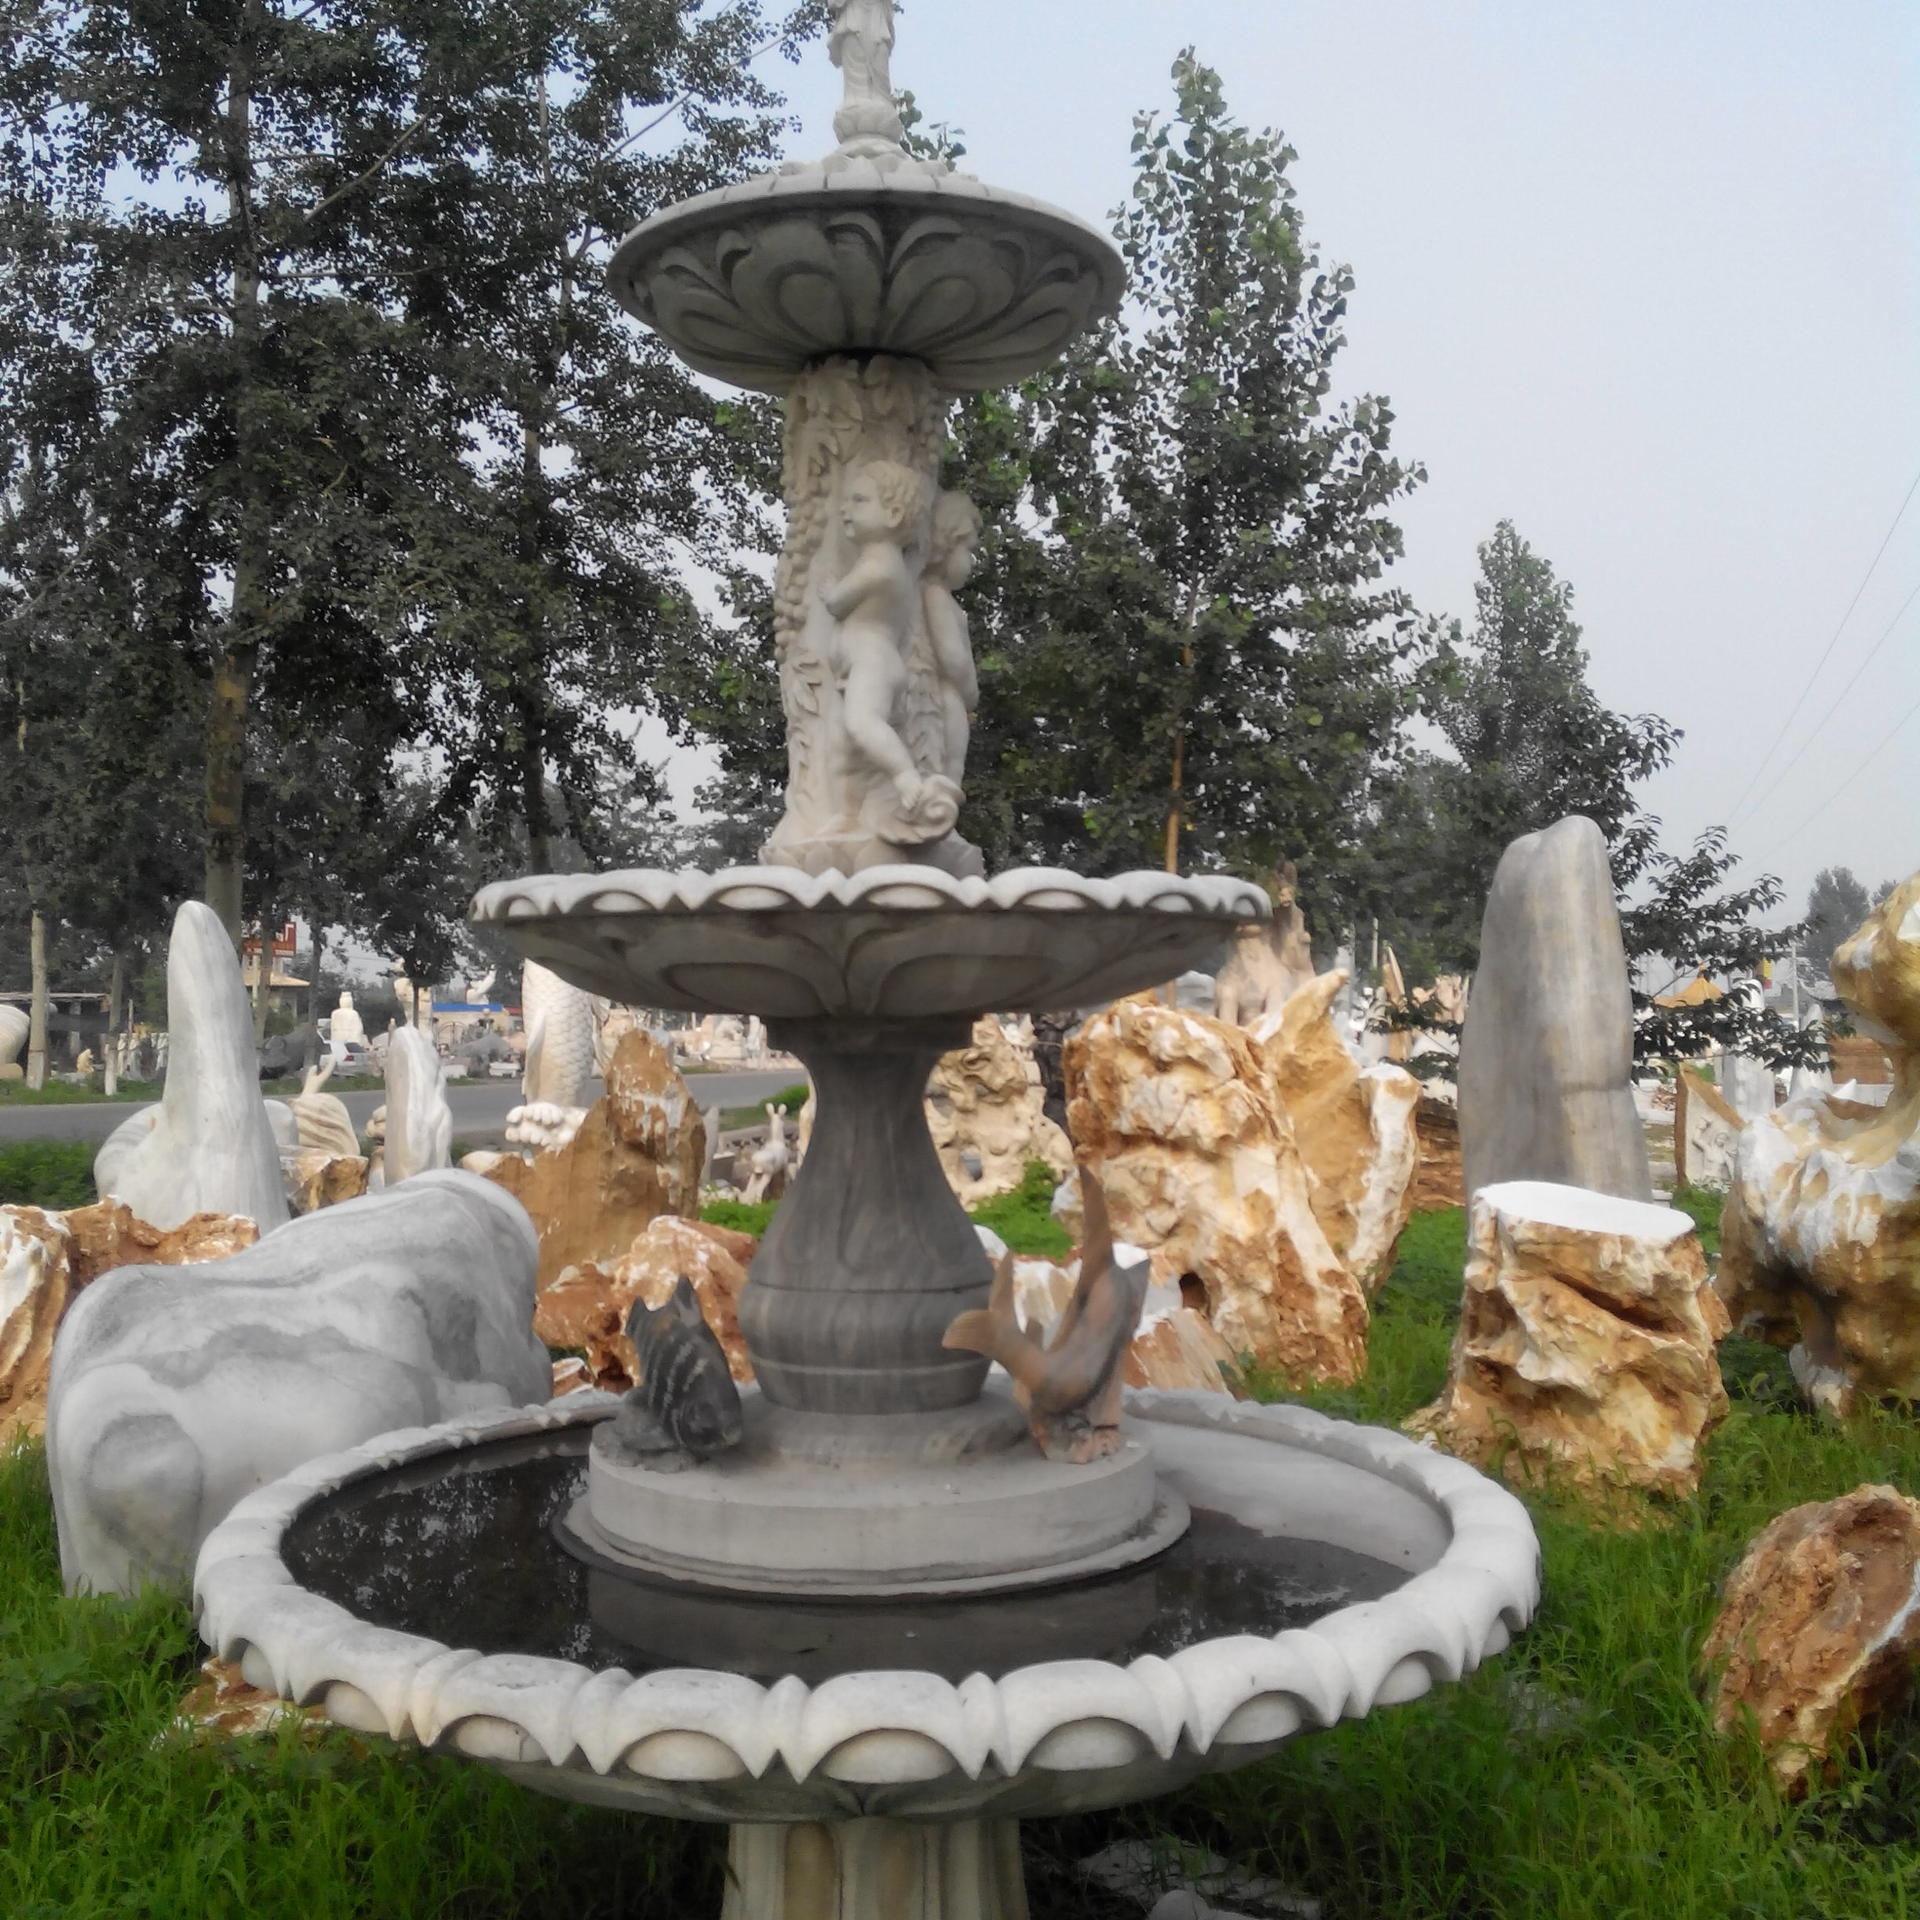 石雕厂家 生产汉白玉石雕喷泉 欧式人物动物流水喷泉 广场庭院室外石雕喷泉定制